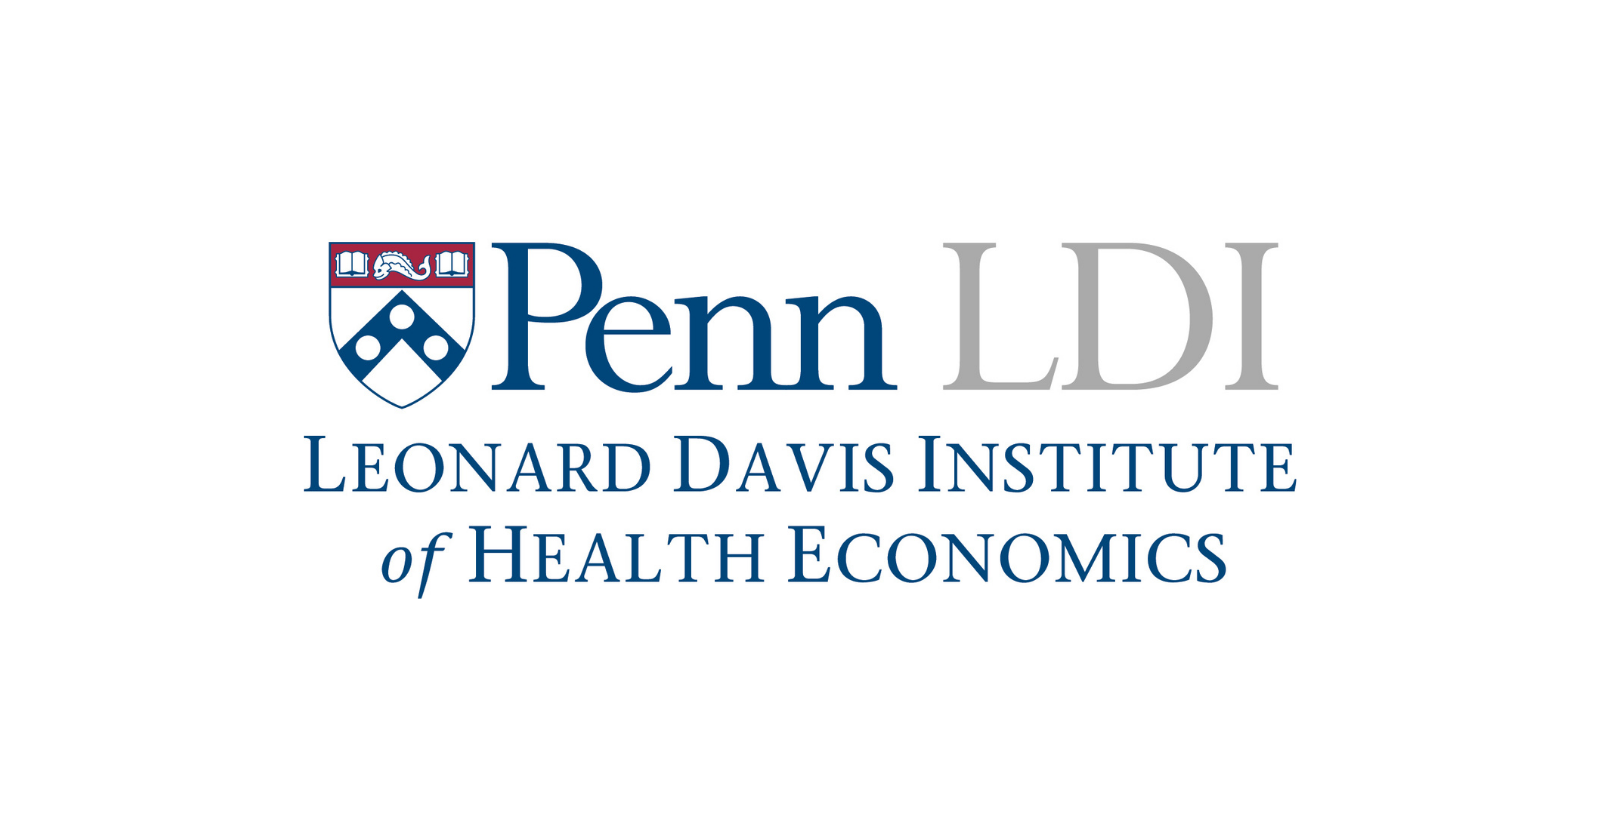 GEAR UP Fellowship at LDI - Penn LDI